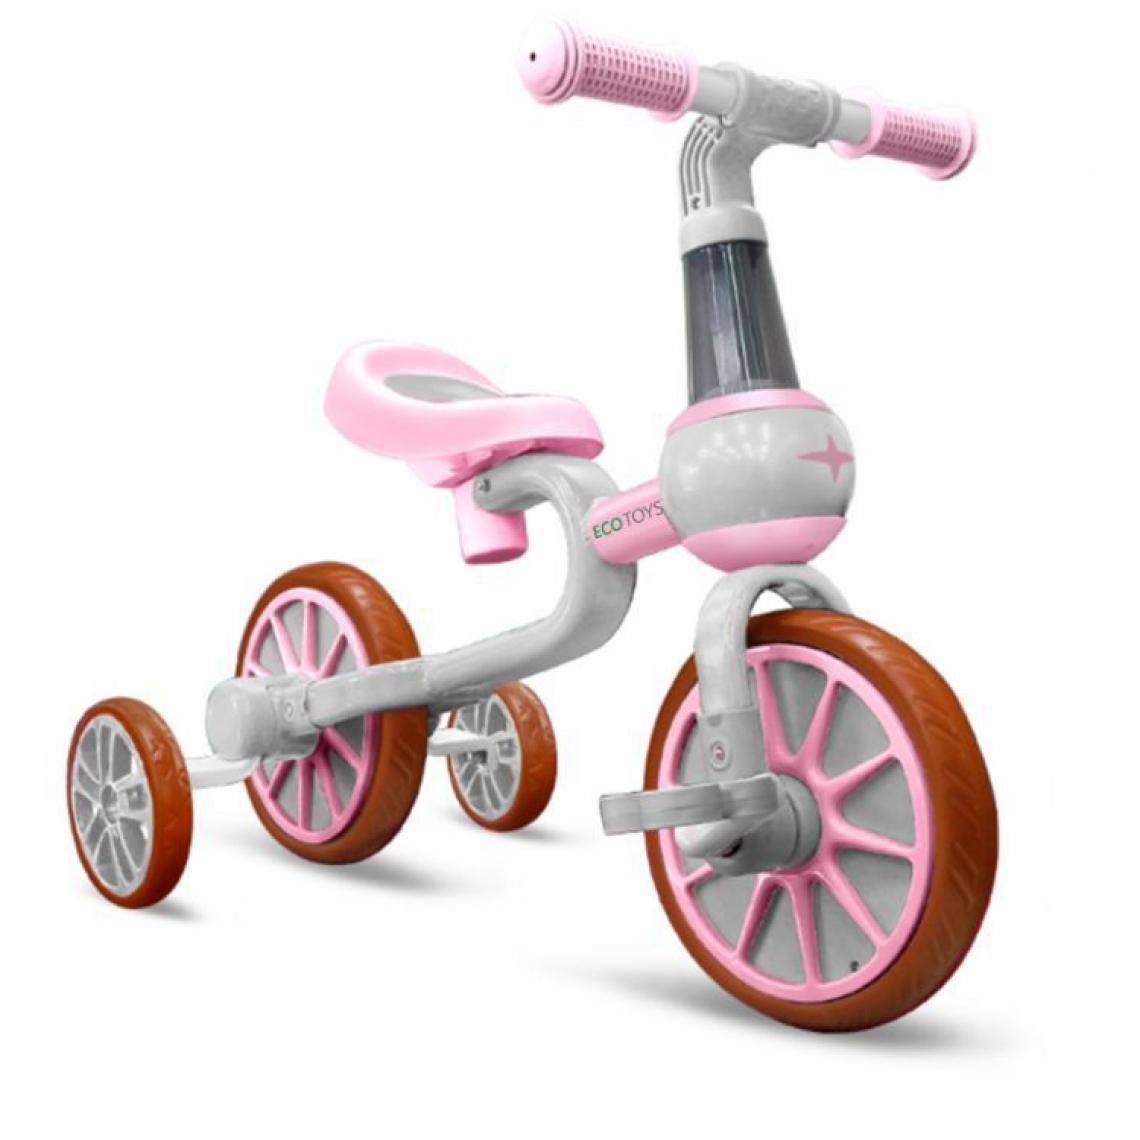 Hucoco - MSTORE | Vélo draisienne 4en1 enfant | À partir de 2 ans | Pédales + roues latérales | Selle réglable | Léger et robuste - Rose/blanc - Voitures